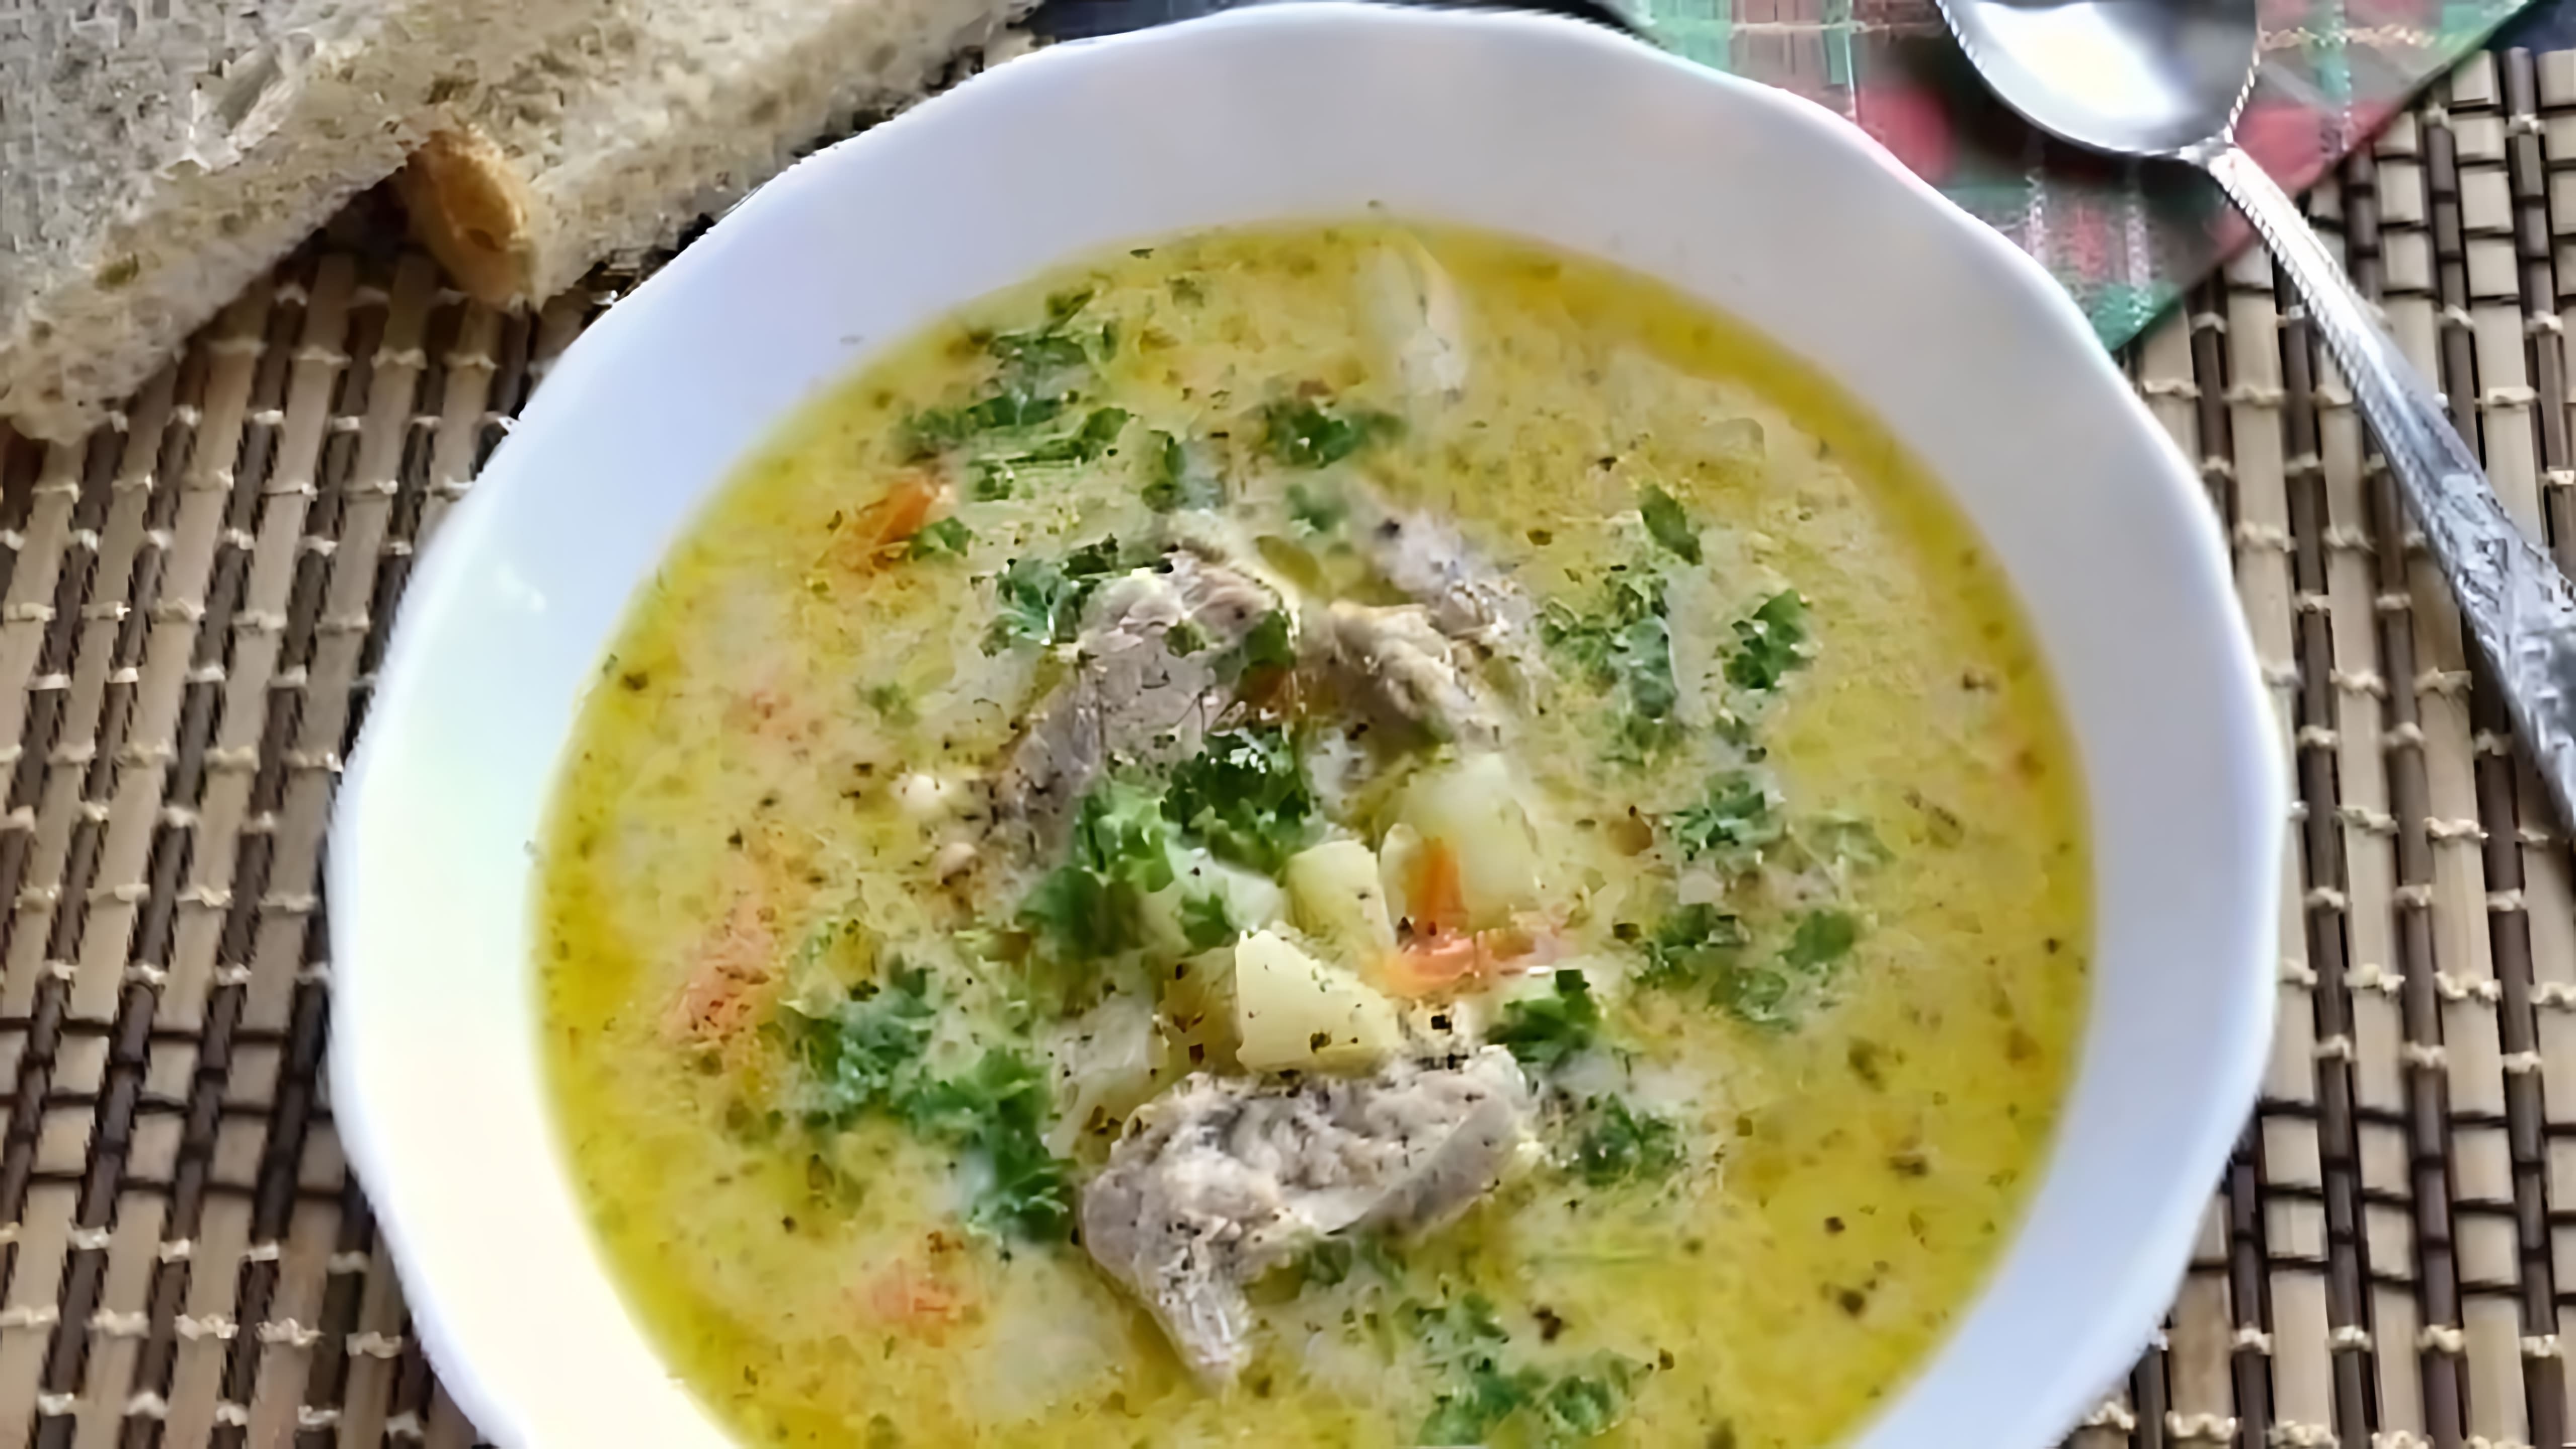 В этом видео демонстрируется рецепт приготовления сырного супа со свининой